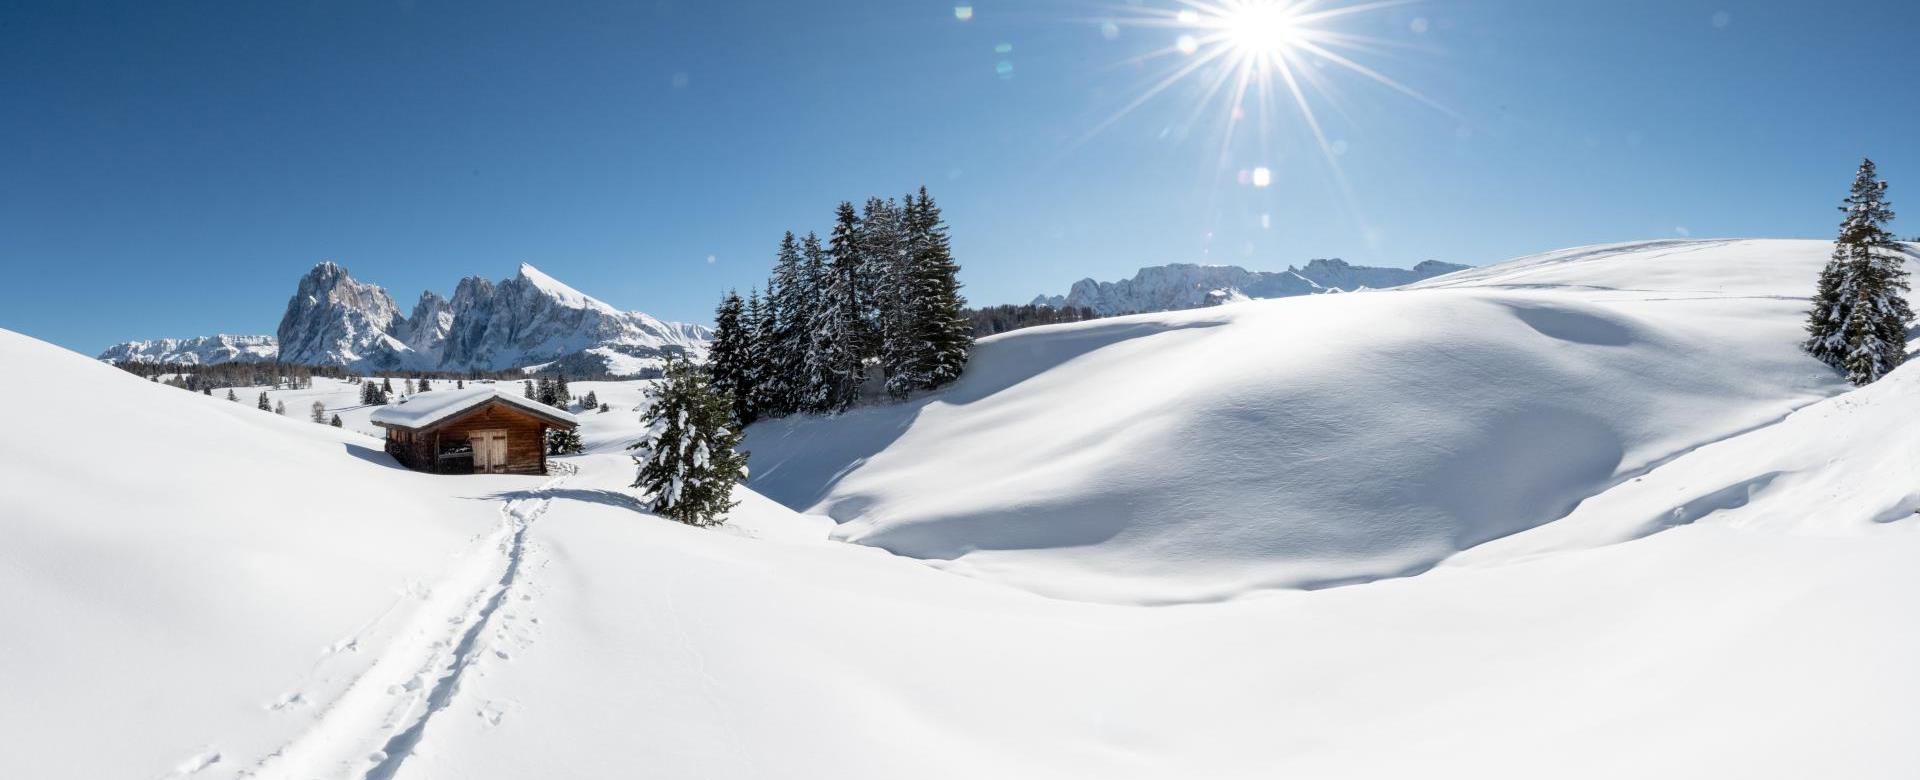 Alpe di Siusi under the Winter Sun